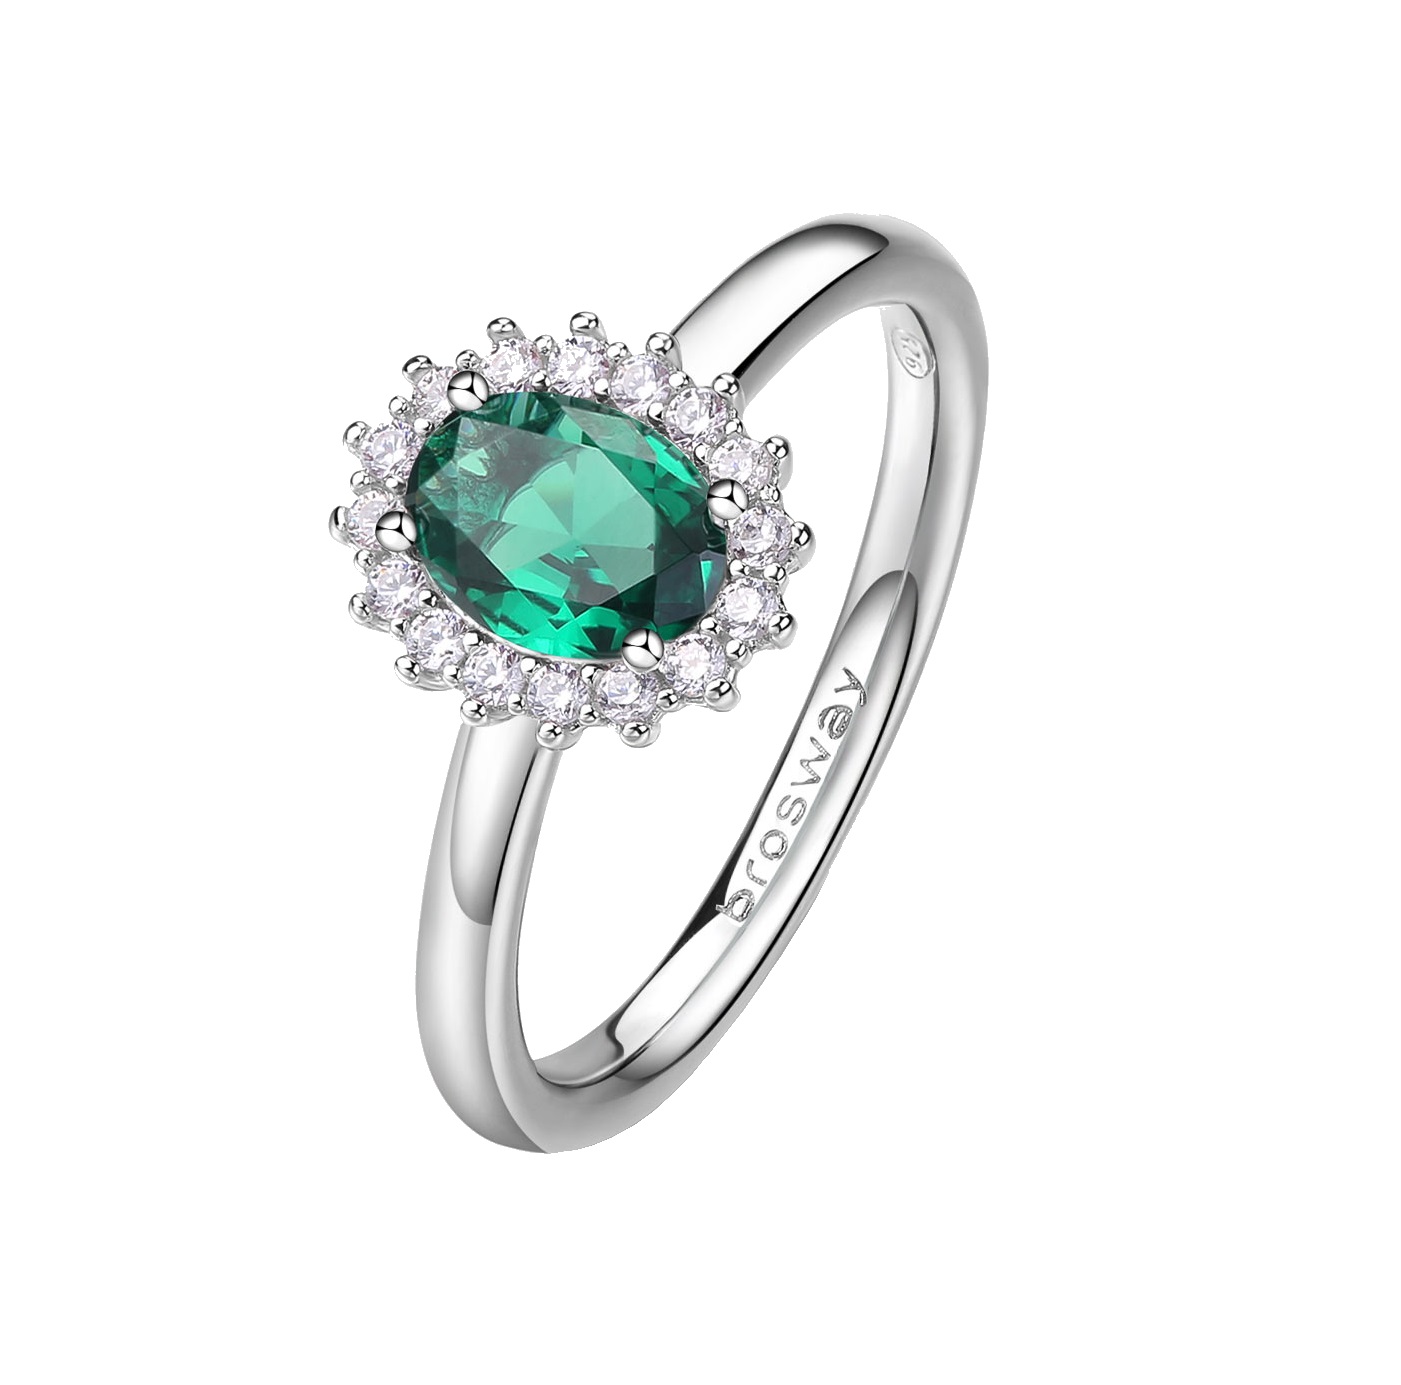 Brosway Elegantný strieborný prsteň Fancy Life Green FLG71 52 mm